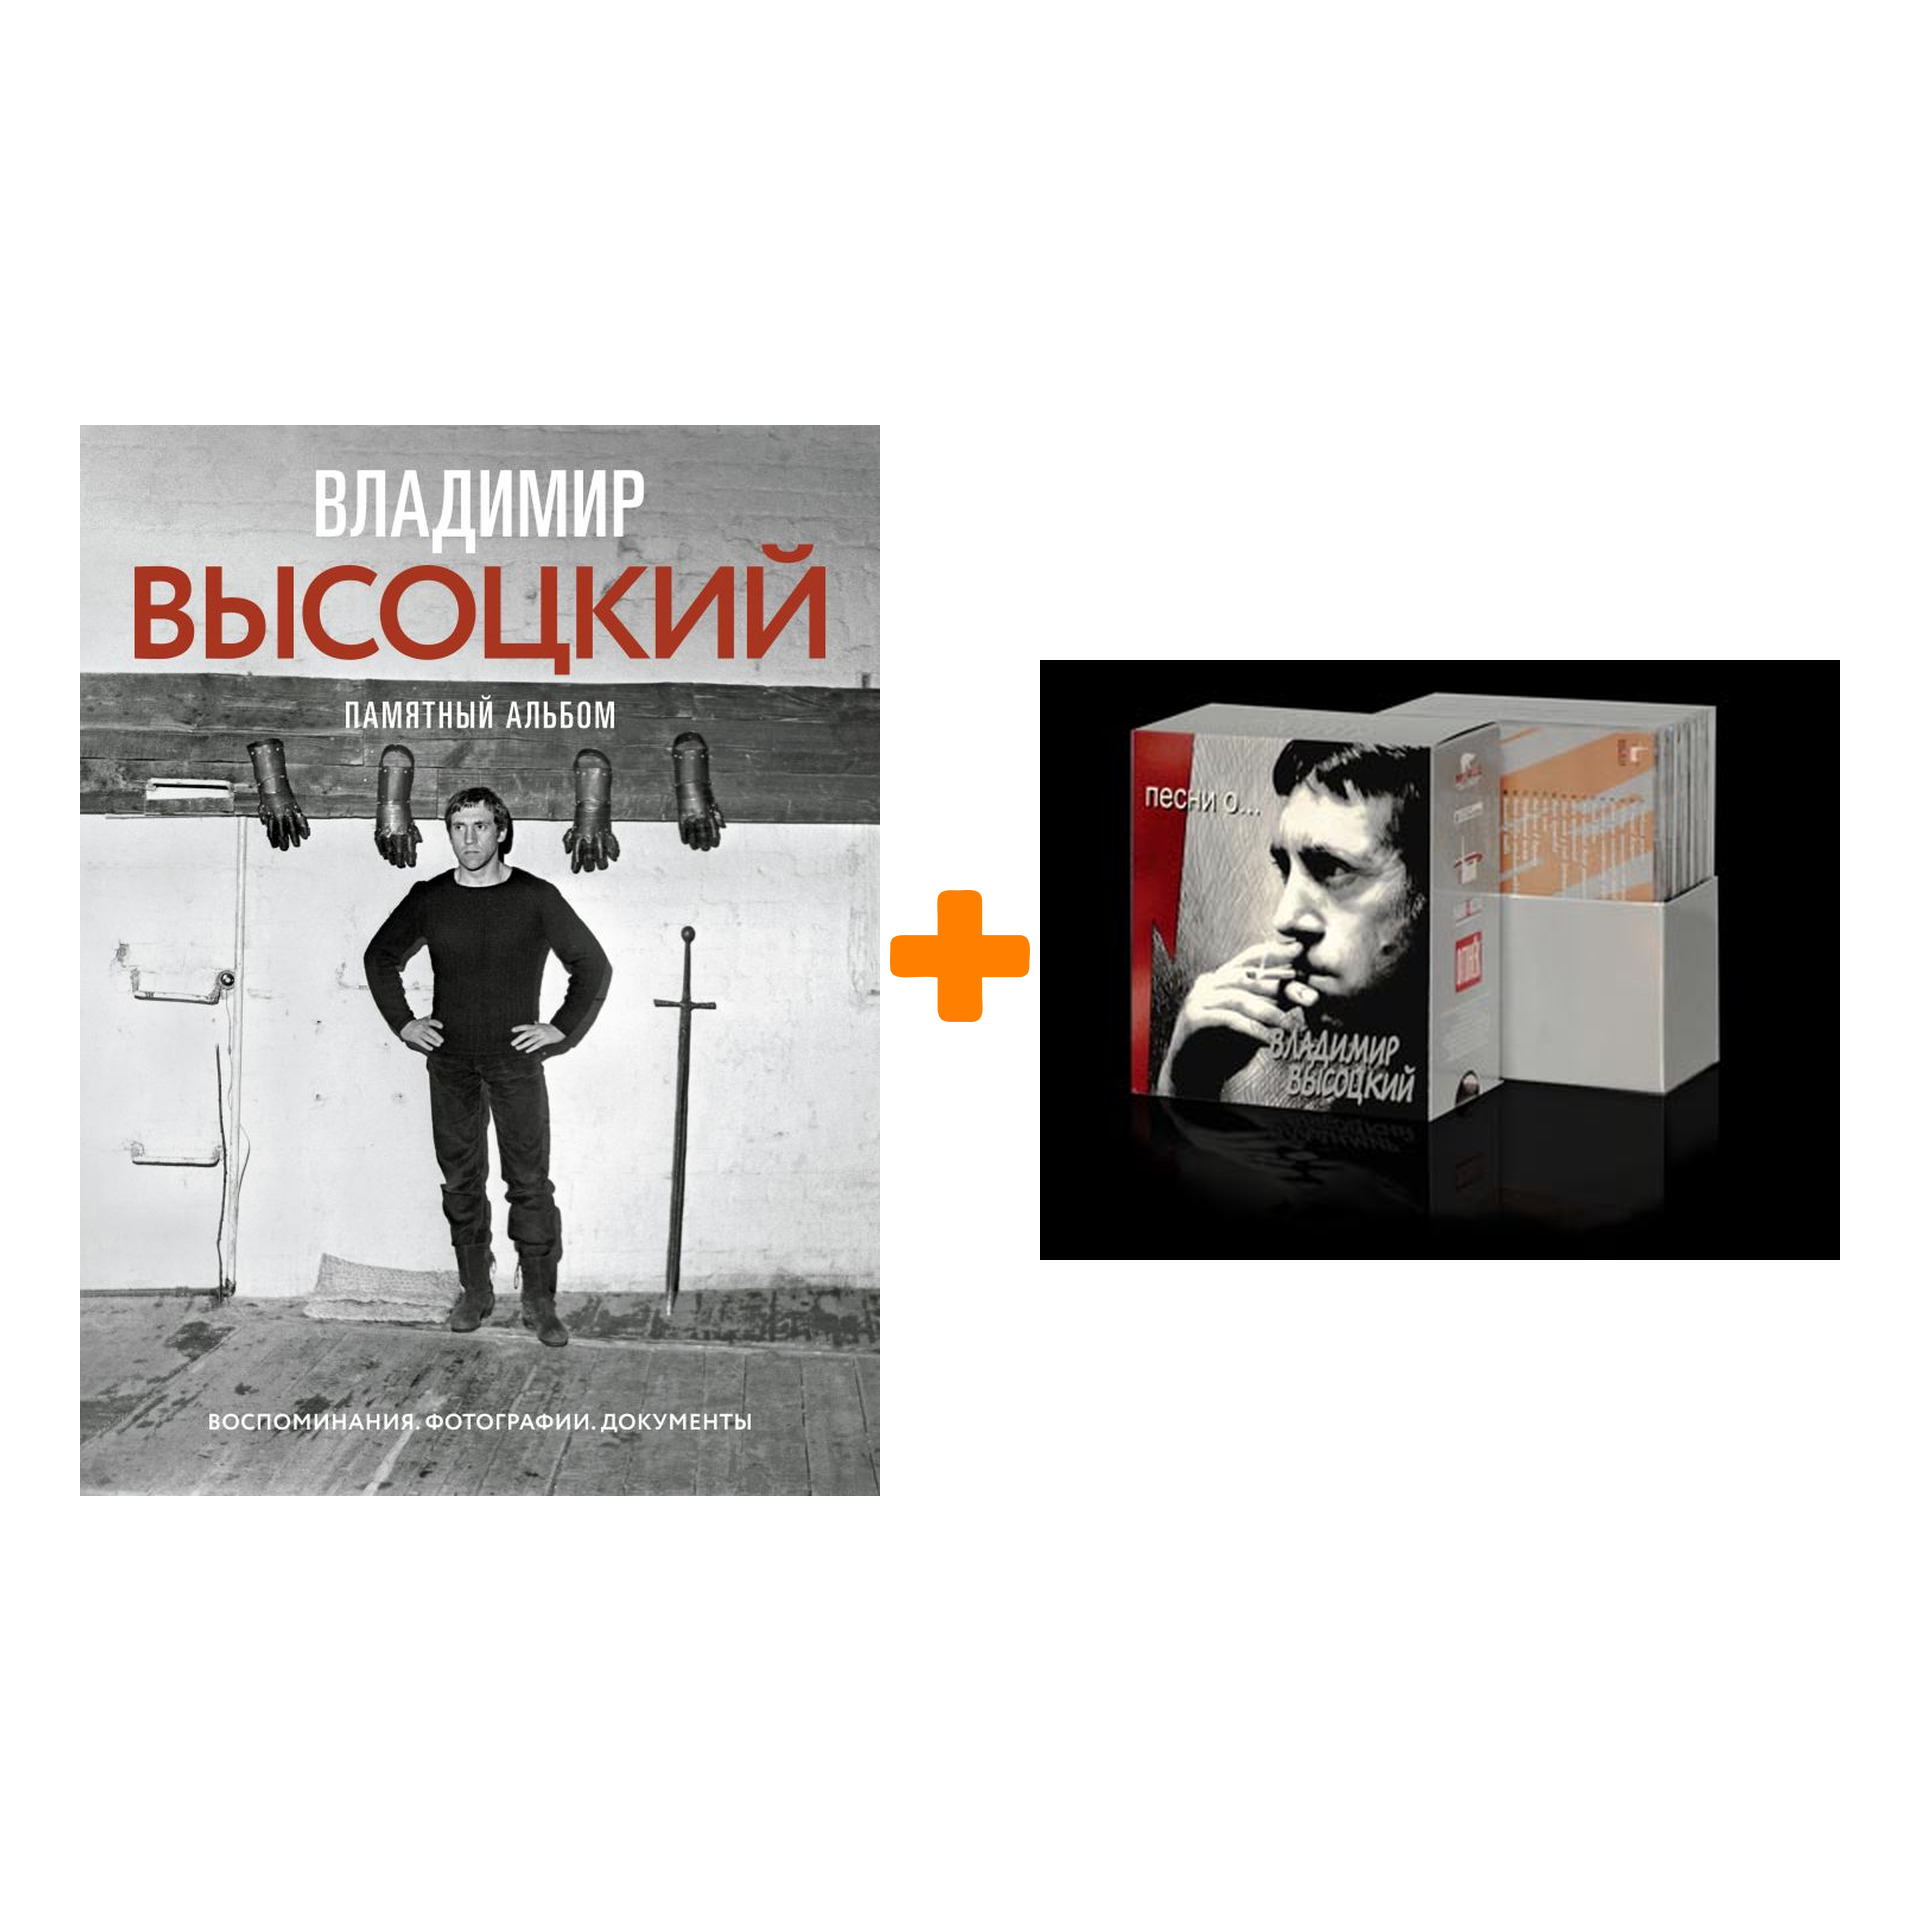 Комплект Владимир Высоцкий: книга Памятный альбом + CD «Песни о...» (6 CD)